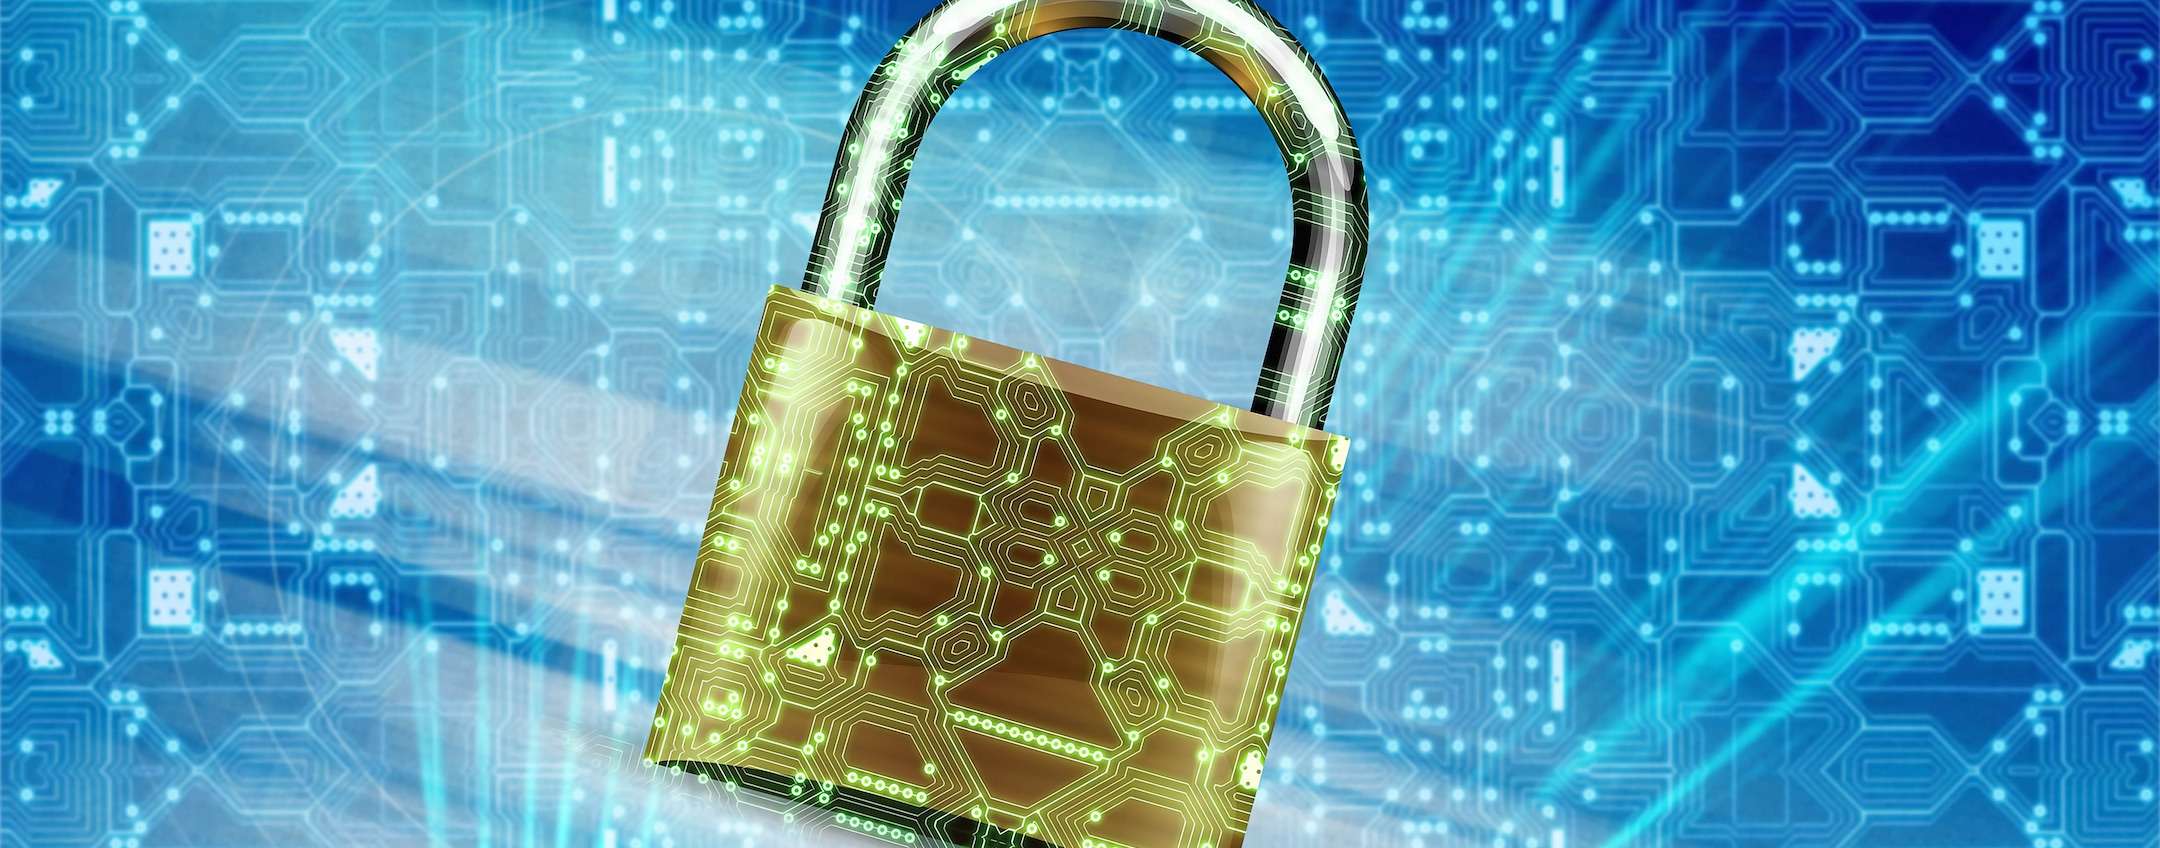 Sicurezza sul web: 10 regole per proteggersi dai pericoli in rete